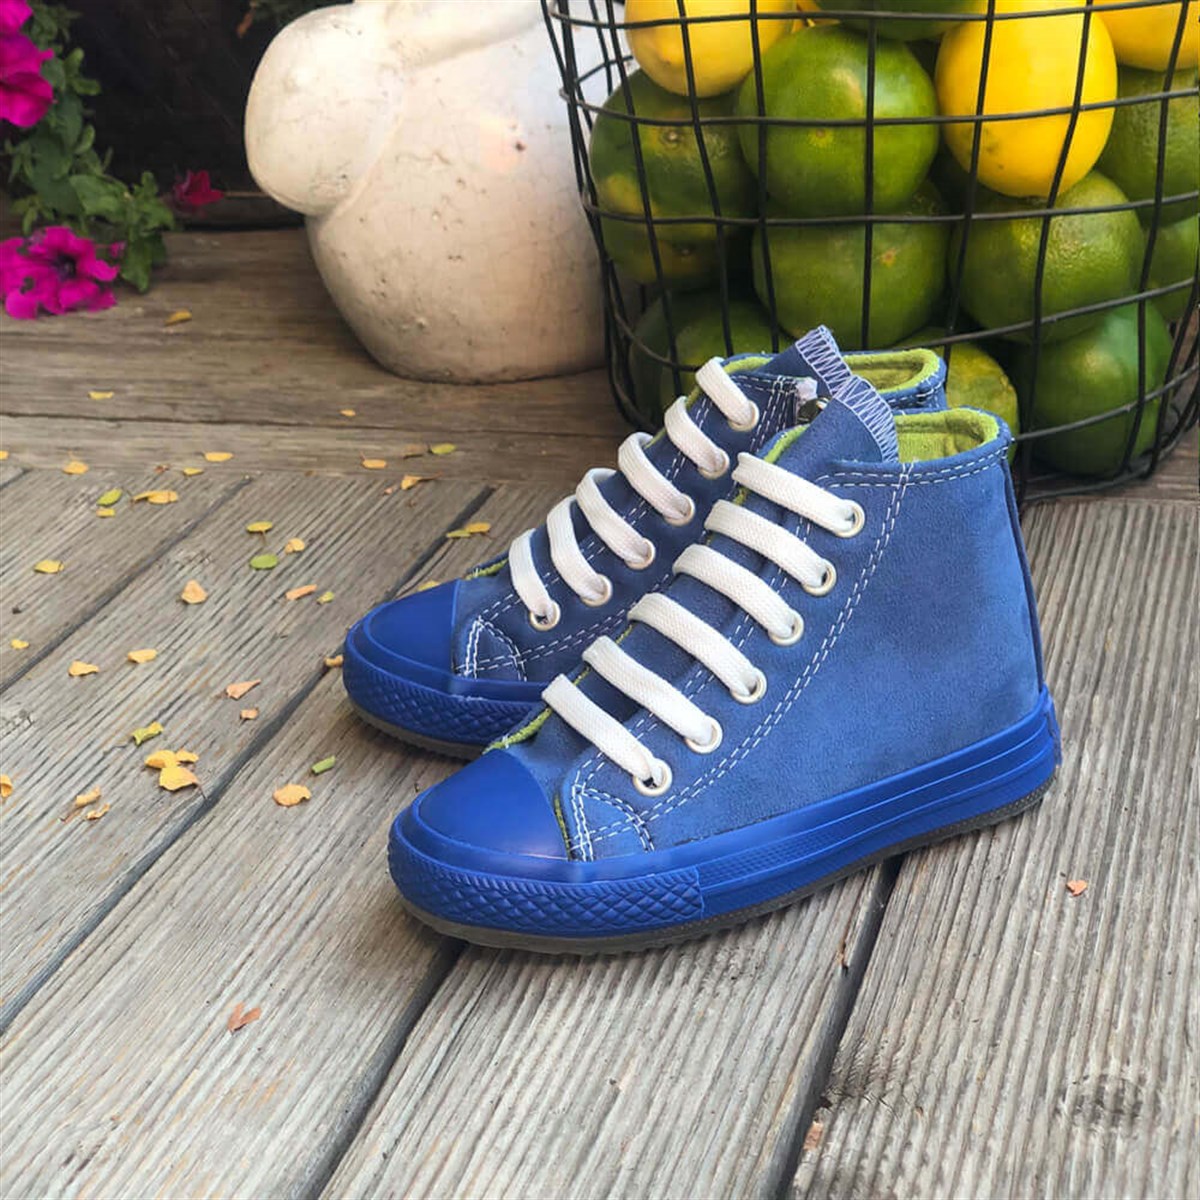 Kışlık Çocuk Spor Ayakkabı Killah - Mavi Renk 2142 | Lilbugga